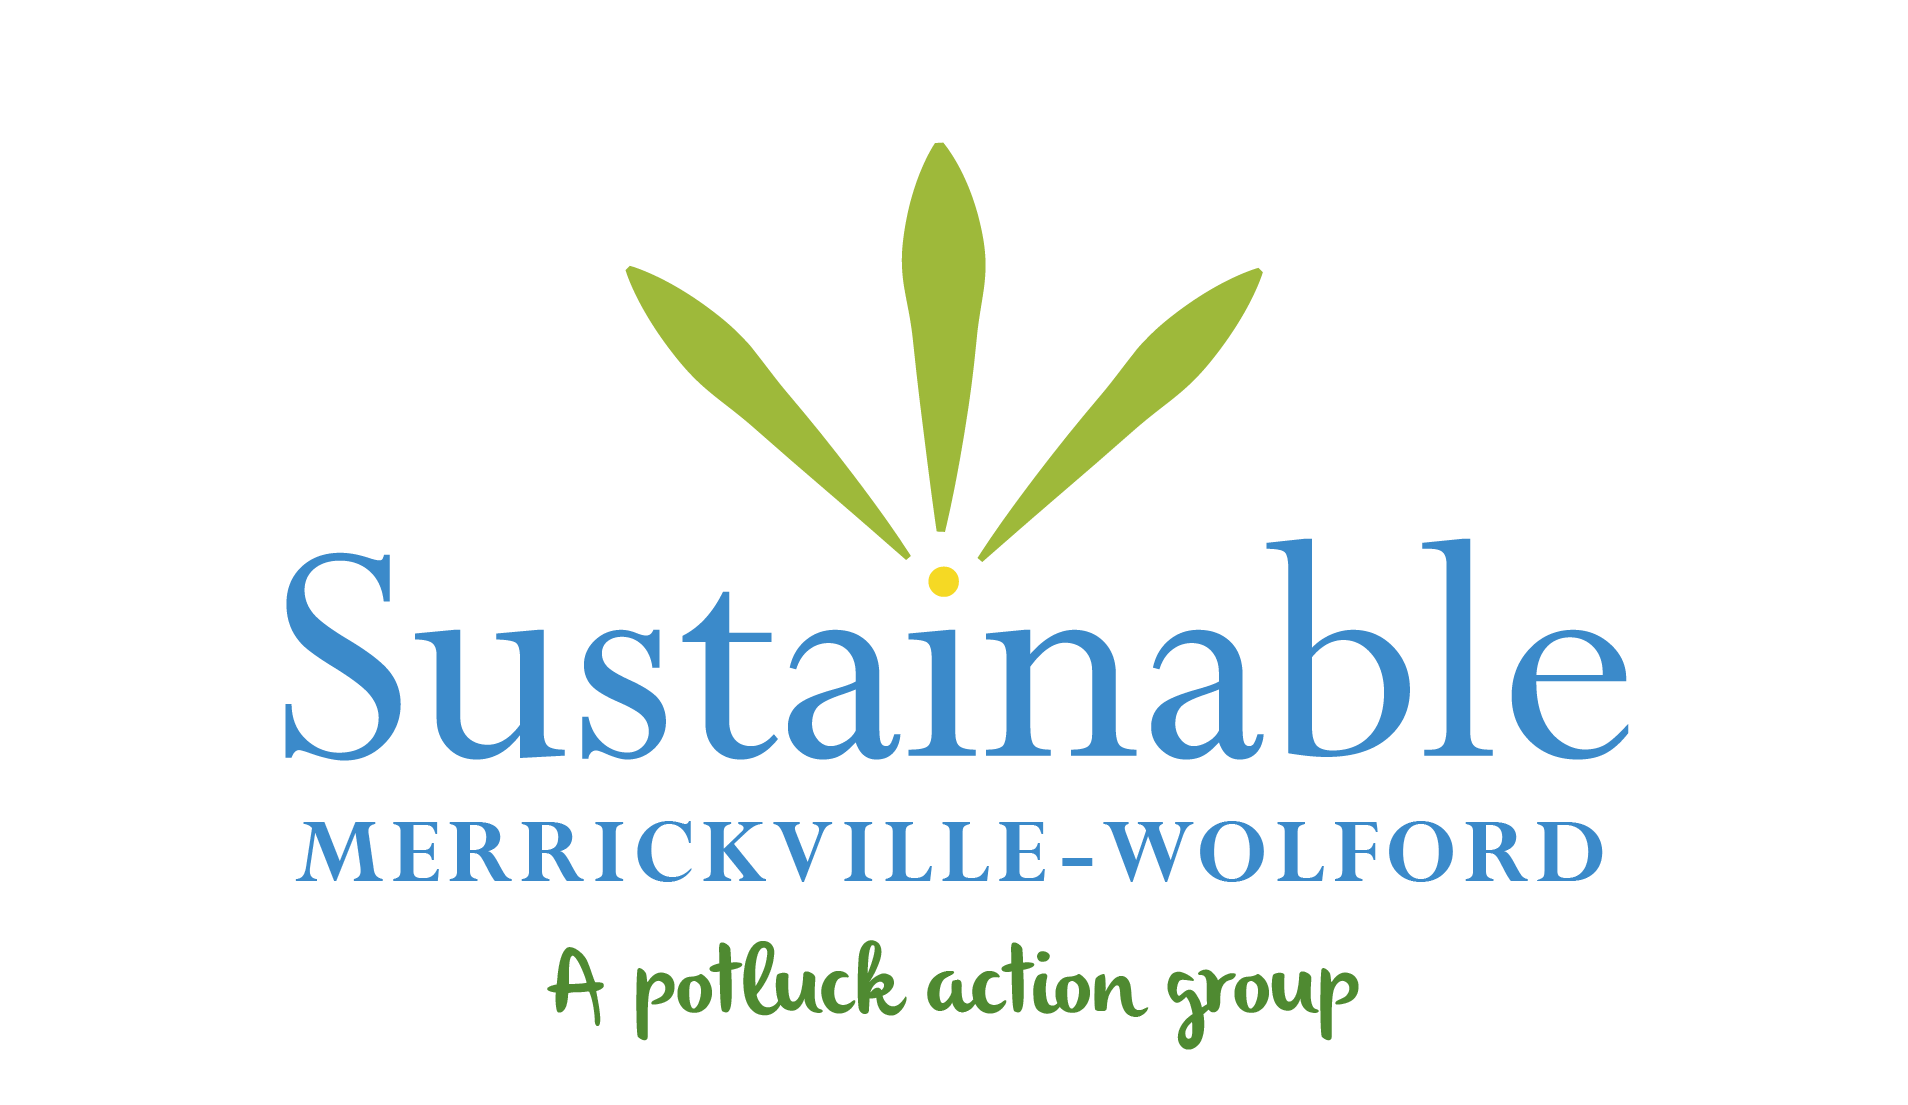 Sustainable Merrickville-Wolford